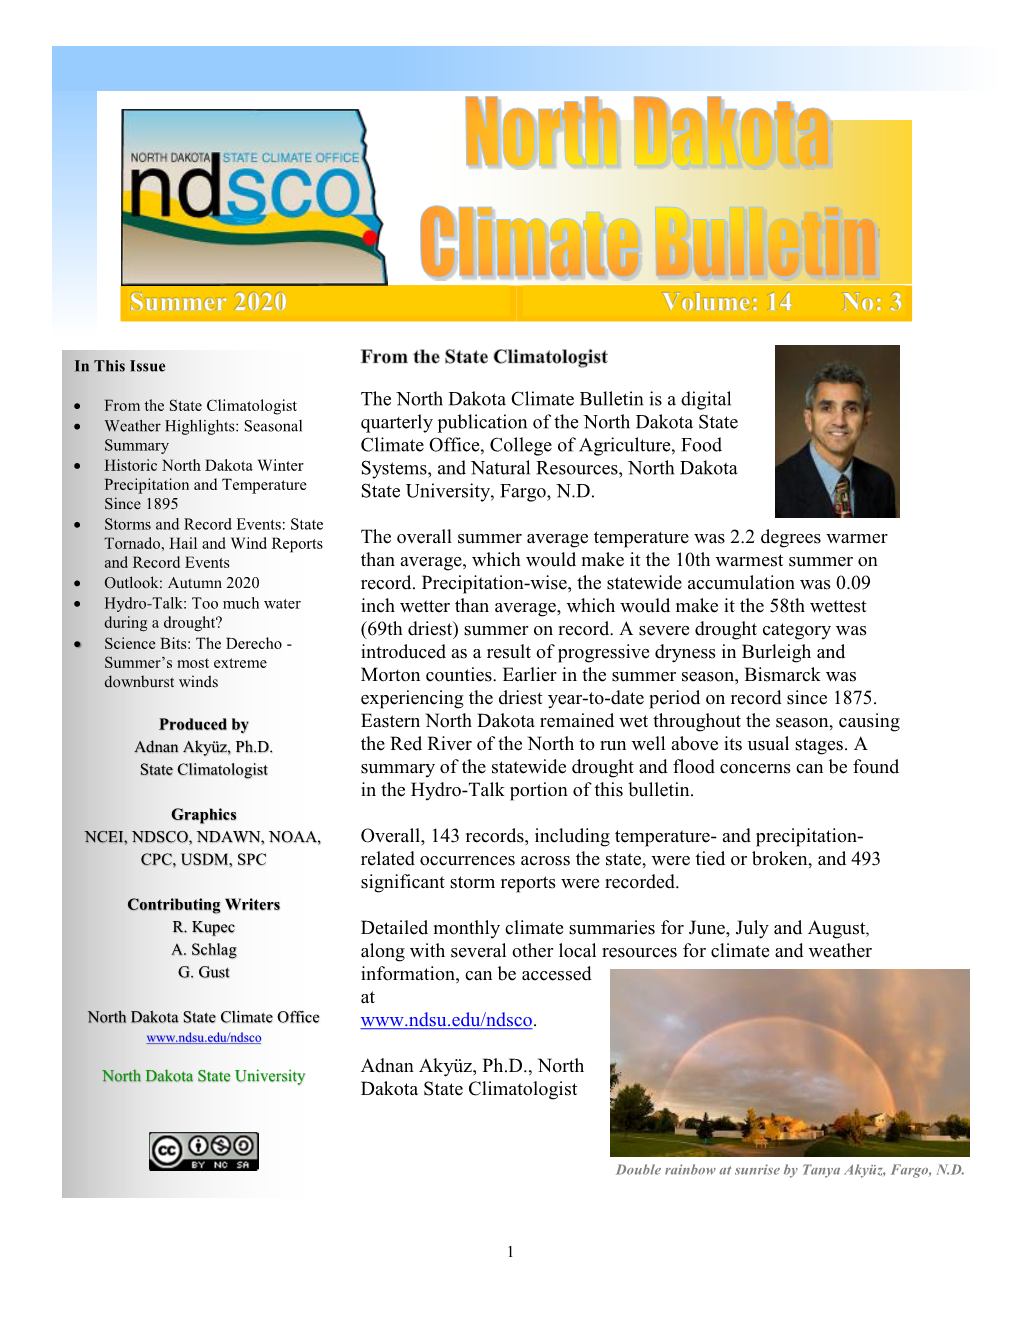 Summer 2020 Climate Bulletin